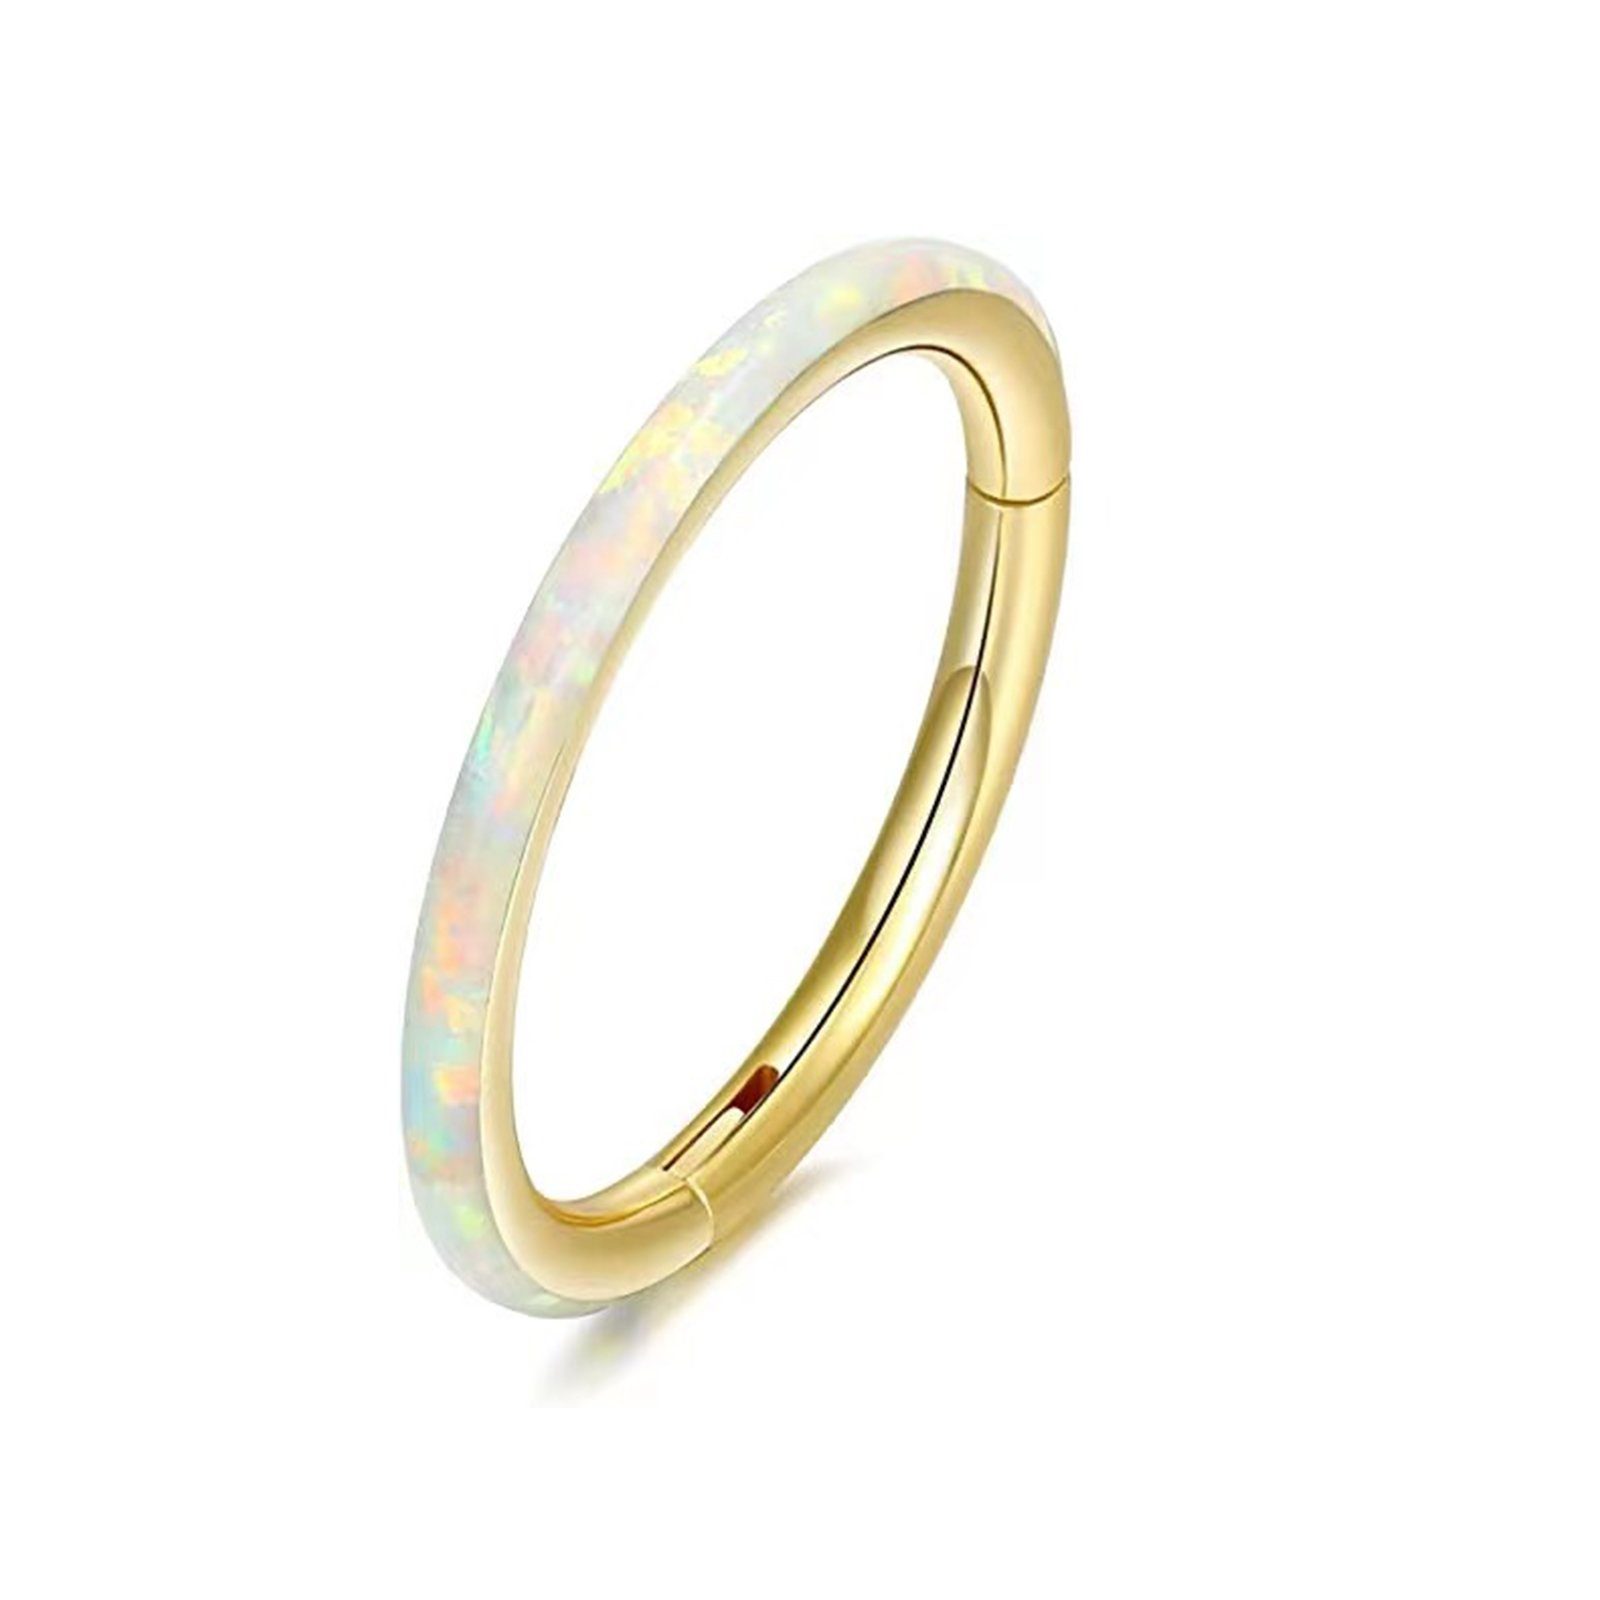 Karisma Nasenpiercing Titan G23 Hinged Segmentring Charnier/Conch Septum Clicker Ring, Stärke 1,2mm-Weiss - (Durchmesser) - 8mm, Opal Weiss Gold